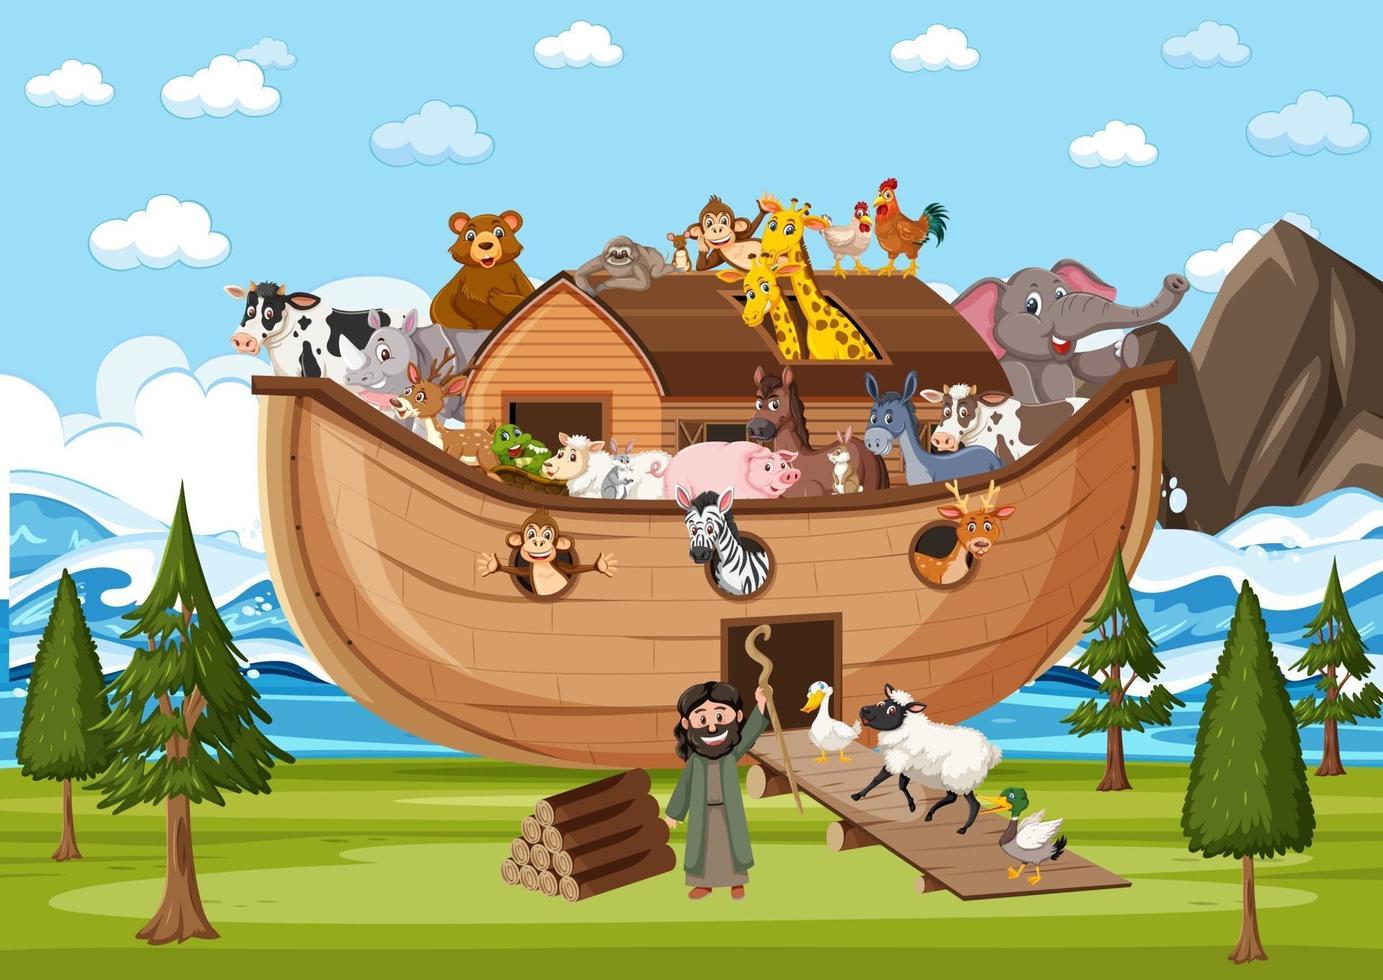 dieren op de ark van Noach in de oceaanscène vector